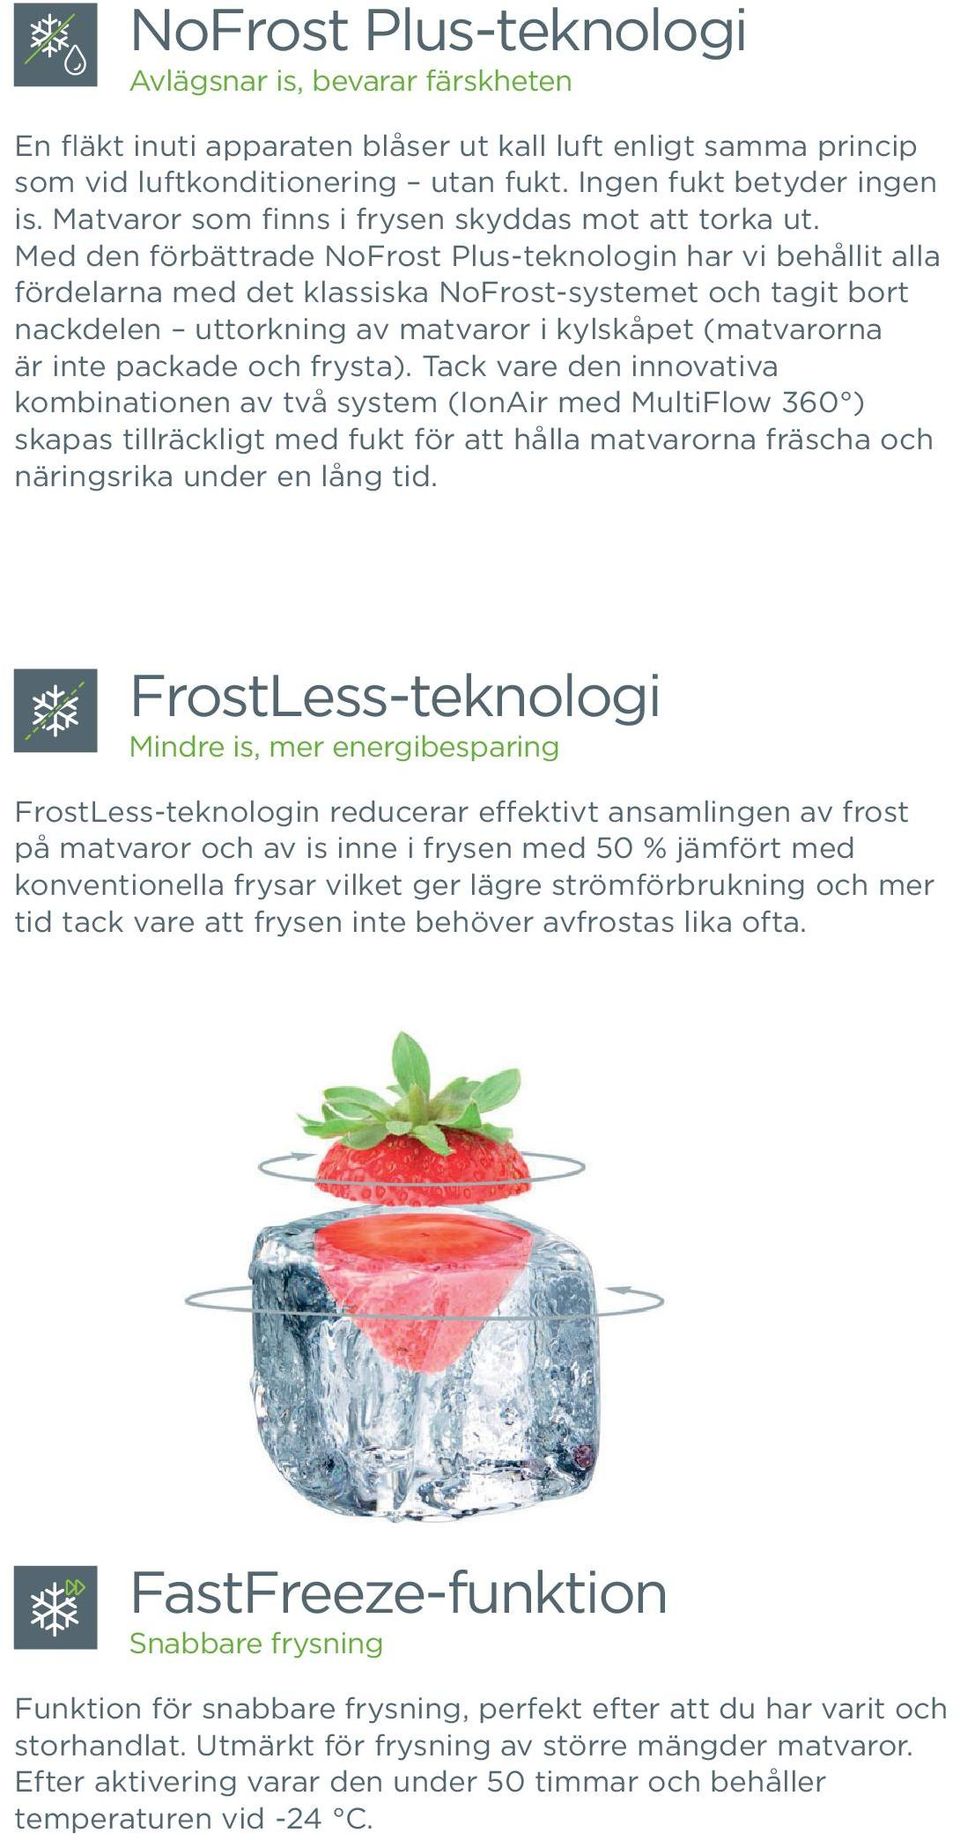 Med den förbättrade NoFrost Plus-teknologin har vi behållit alla fördelarna med det klassiska NoFrost-systemet och tagit bort nackdelen uttorkning av matvaror i kylskåpet (matvarorna är inte packade